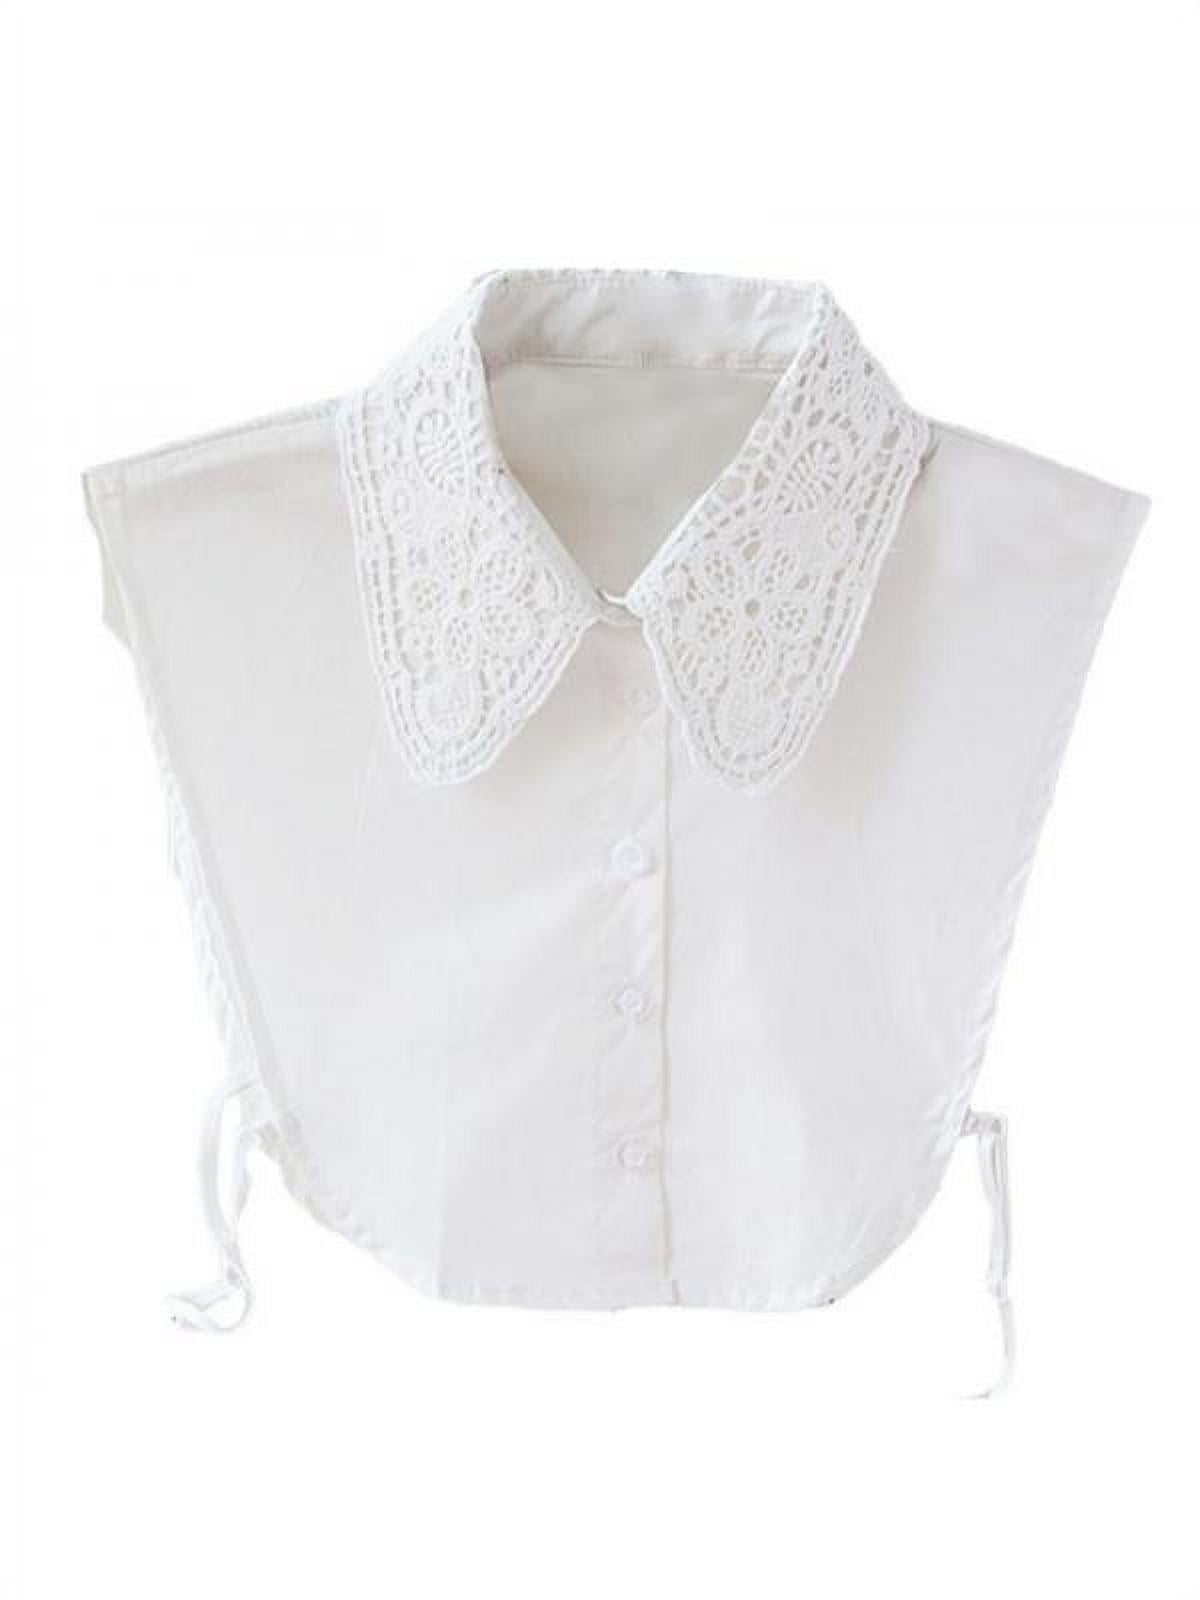 Women False Collar Half Shirt Fake Blouse Ladies Peter Pan Detachable Collar Bib 